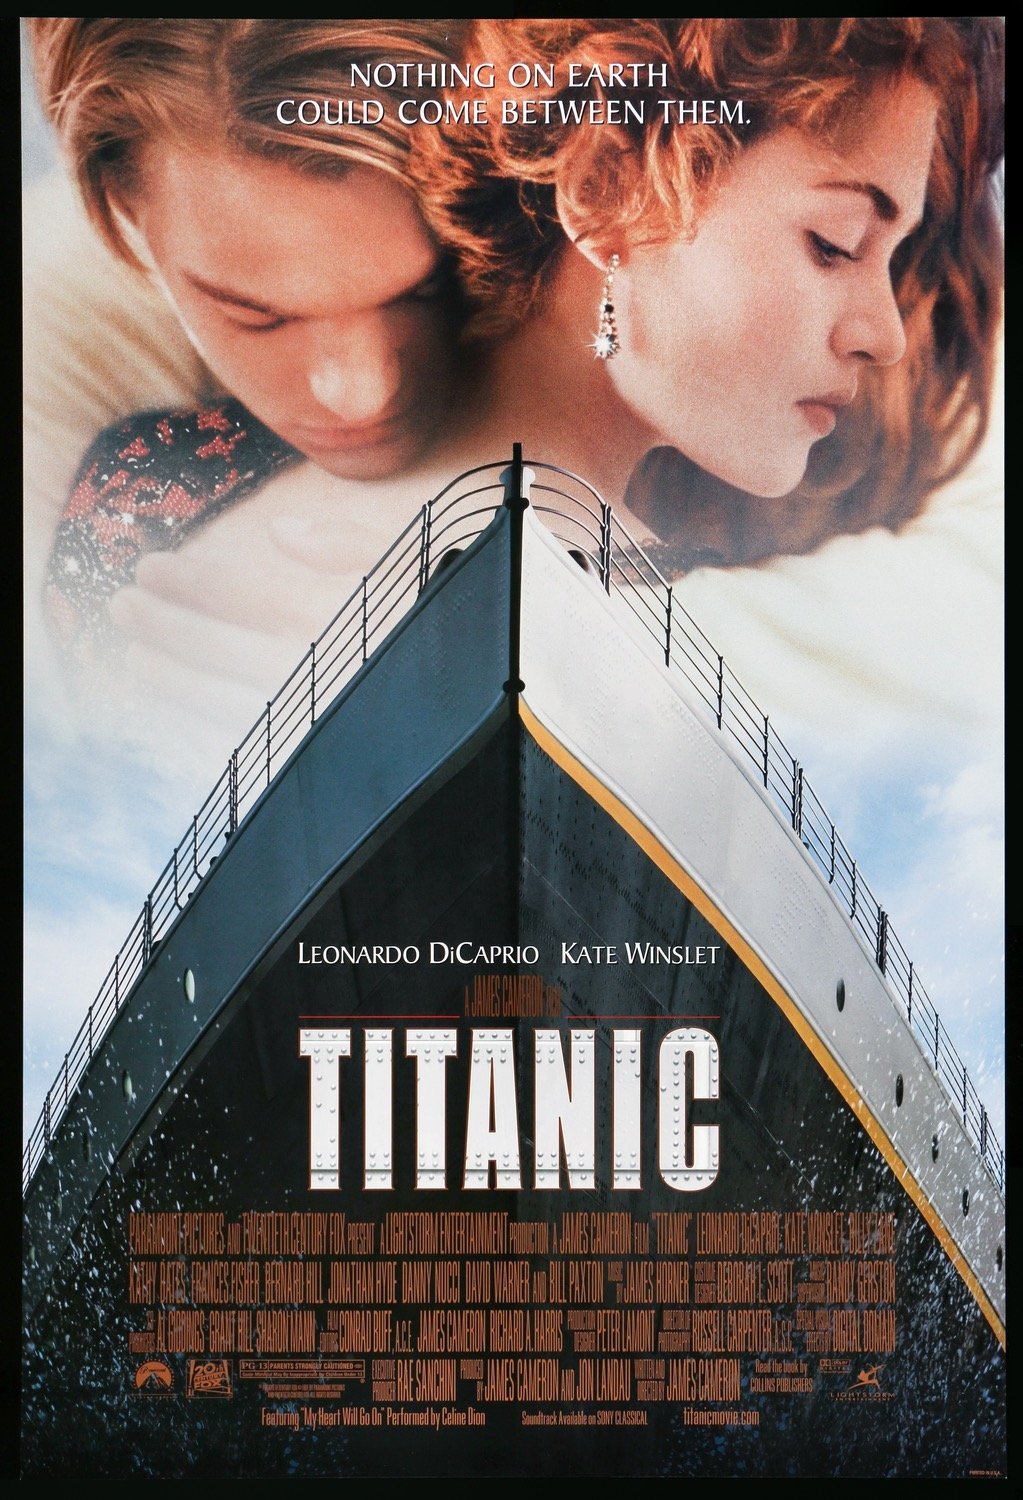 Ota selvää 58+ imagen titanic movie art